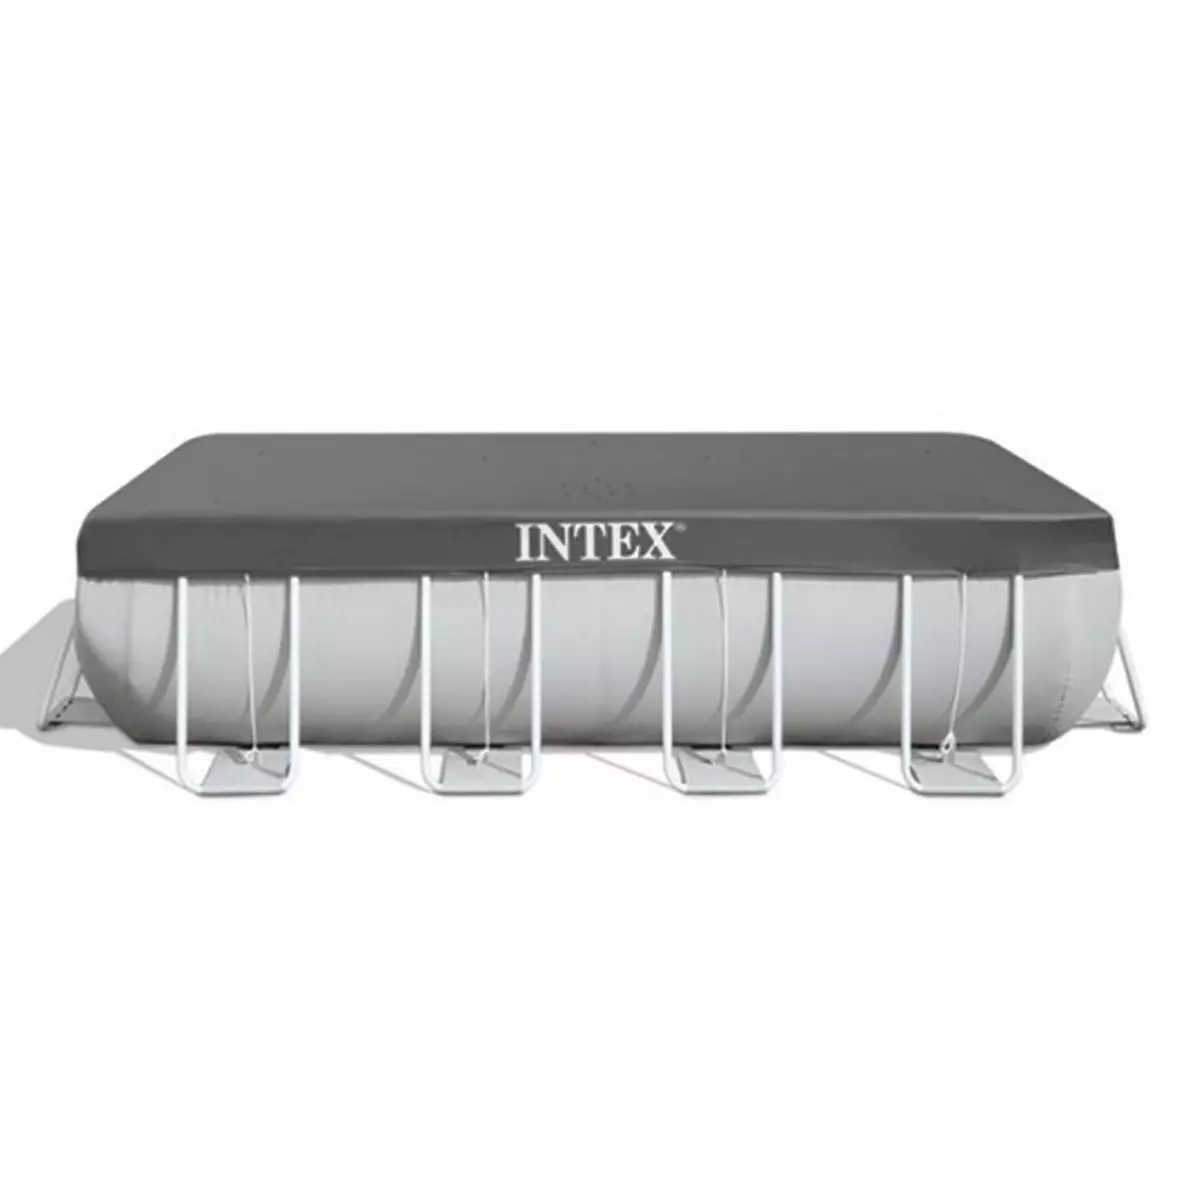 INTEX Bâche de protection pour piscine tubulaire rectangulaire 9,75 x 4,88 m - Intex